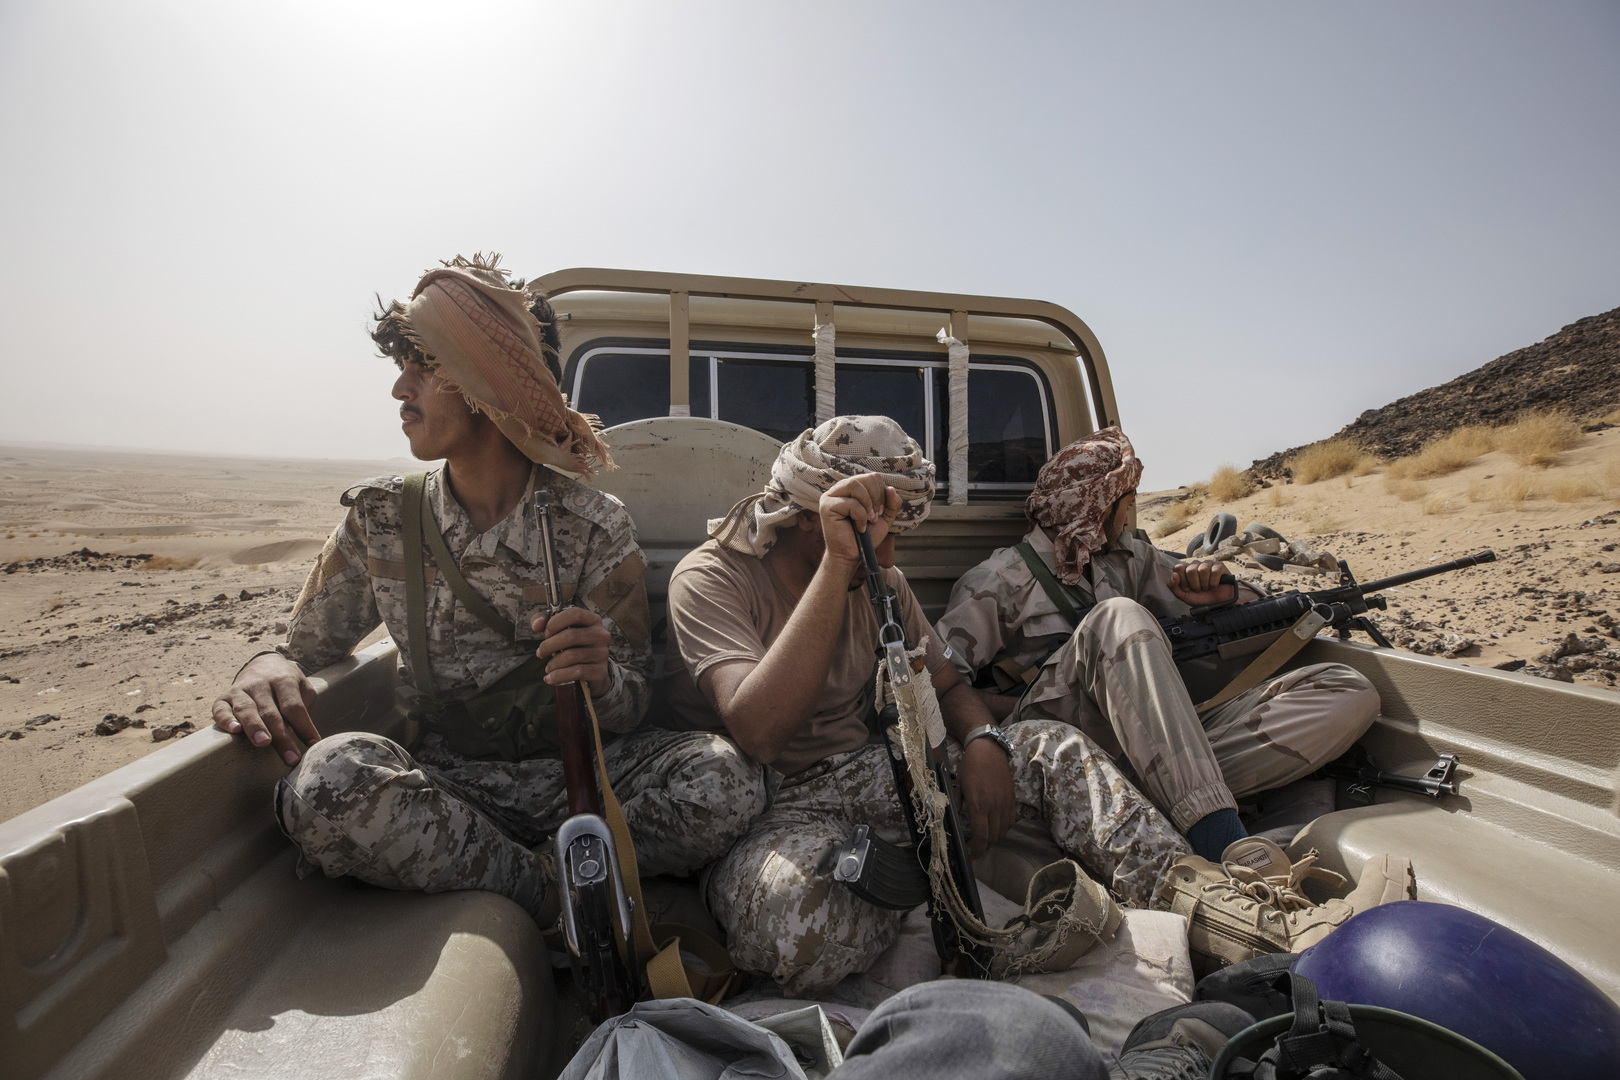 التحالف العربي يعلن تصفيته أكثر من 100 مقاتل حوثي في مأرب خلال 24 ساعة